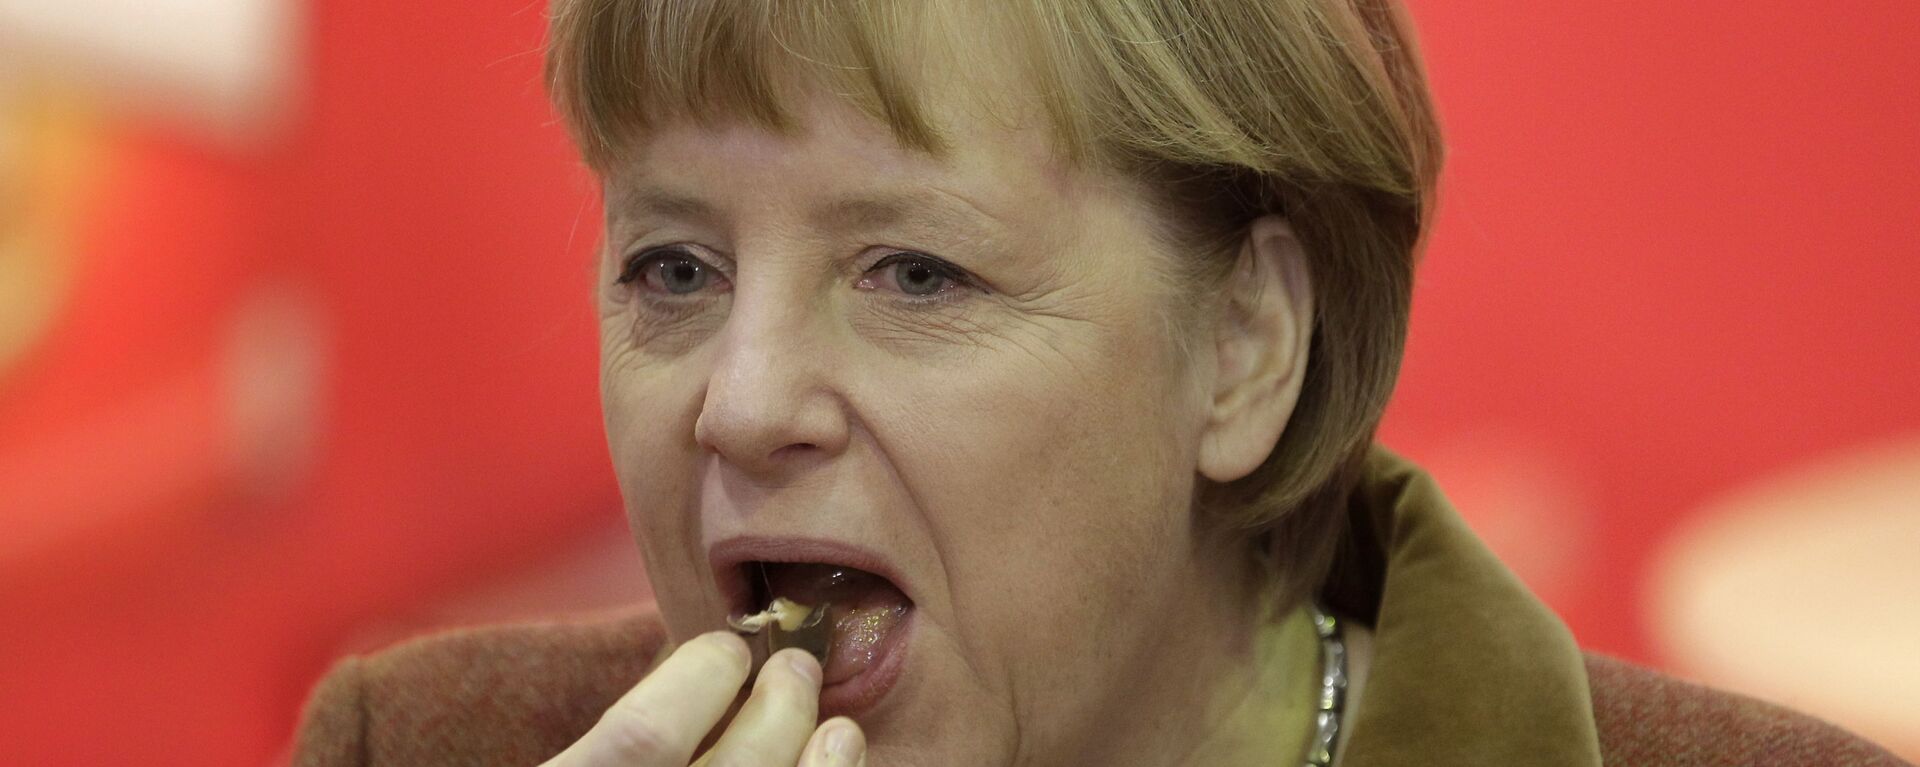 Канцлер Германии Ангела Меркель во время поедания кусочка шоколада - Sputnik Армения, 1920, 17.11.2021